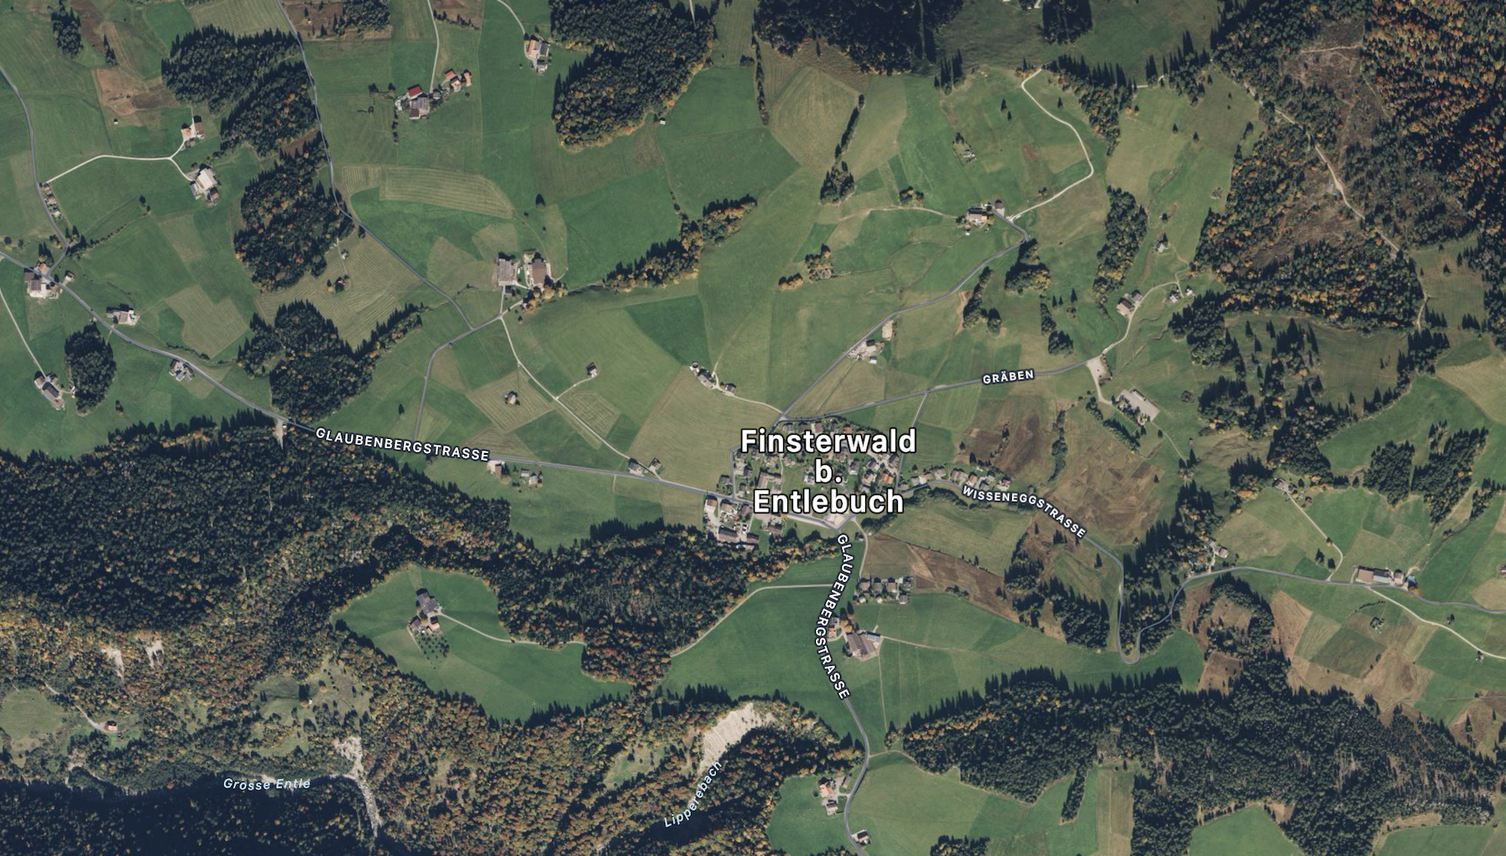 Finsterwald: Töfffahrerin bremst ab und stürzt